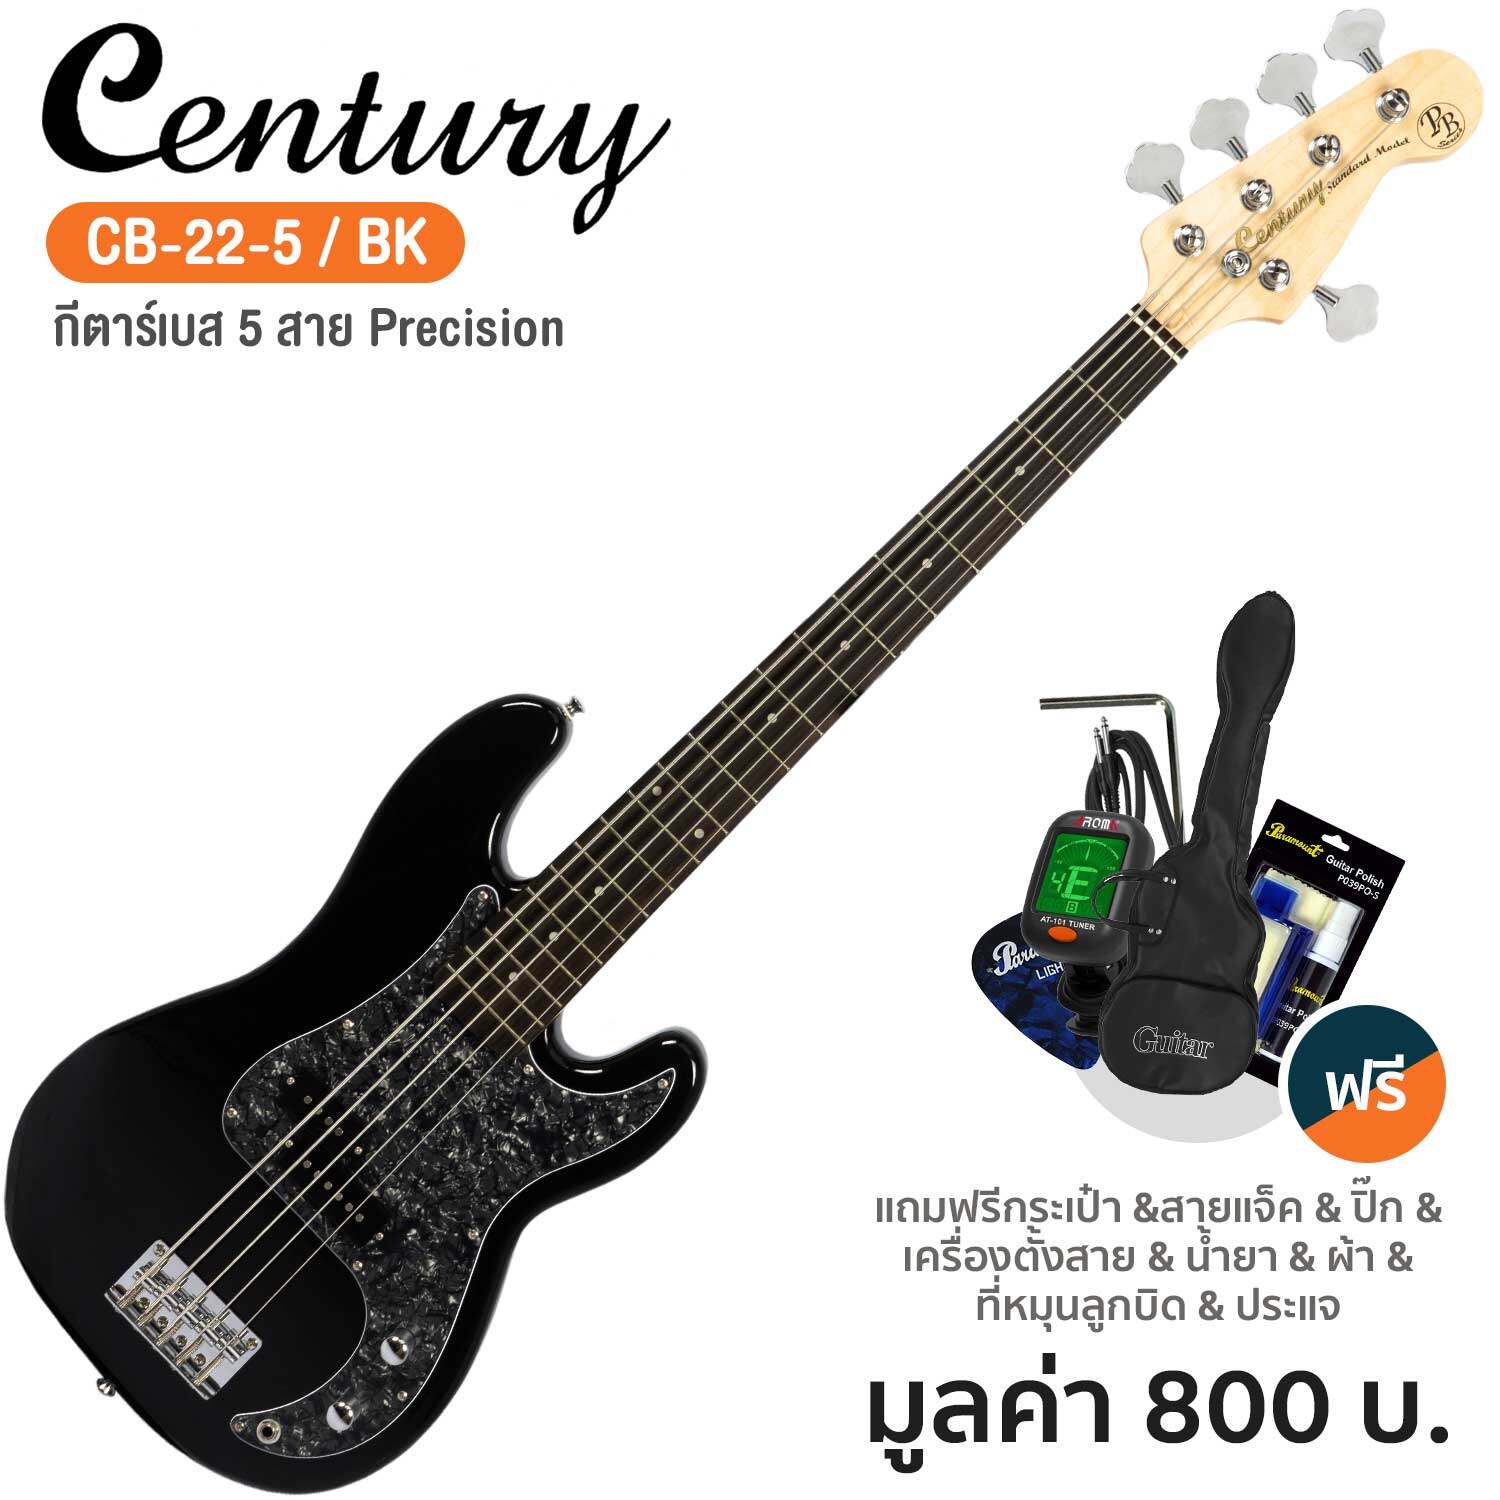 Century CB-22-5 PJ Bass กีตาร์เบส 5 สาย ทรง Precision Jazz ไม้ฮาร์ดวู้ด + แถมฟรีกระเป๋า & จูนเนอร์ & ชุดทำความสะอาด & สายแจ็ค & ปิ๊ก ** กีตาร์เบสมือใหม